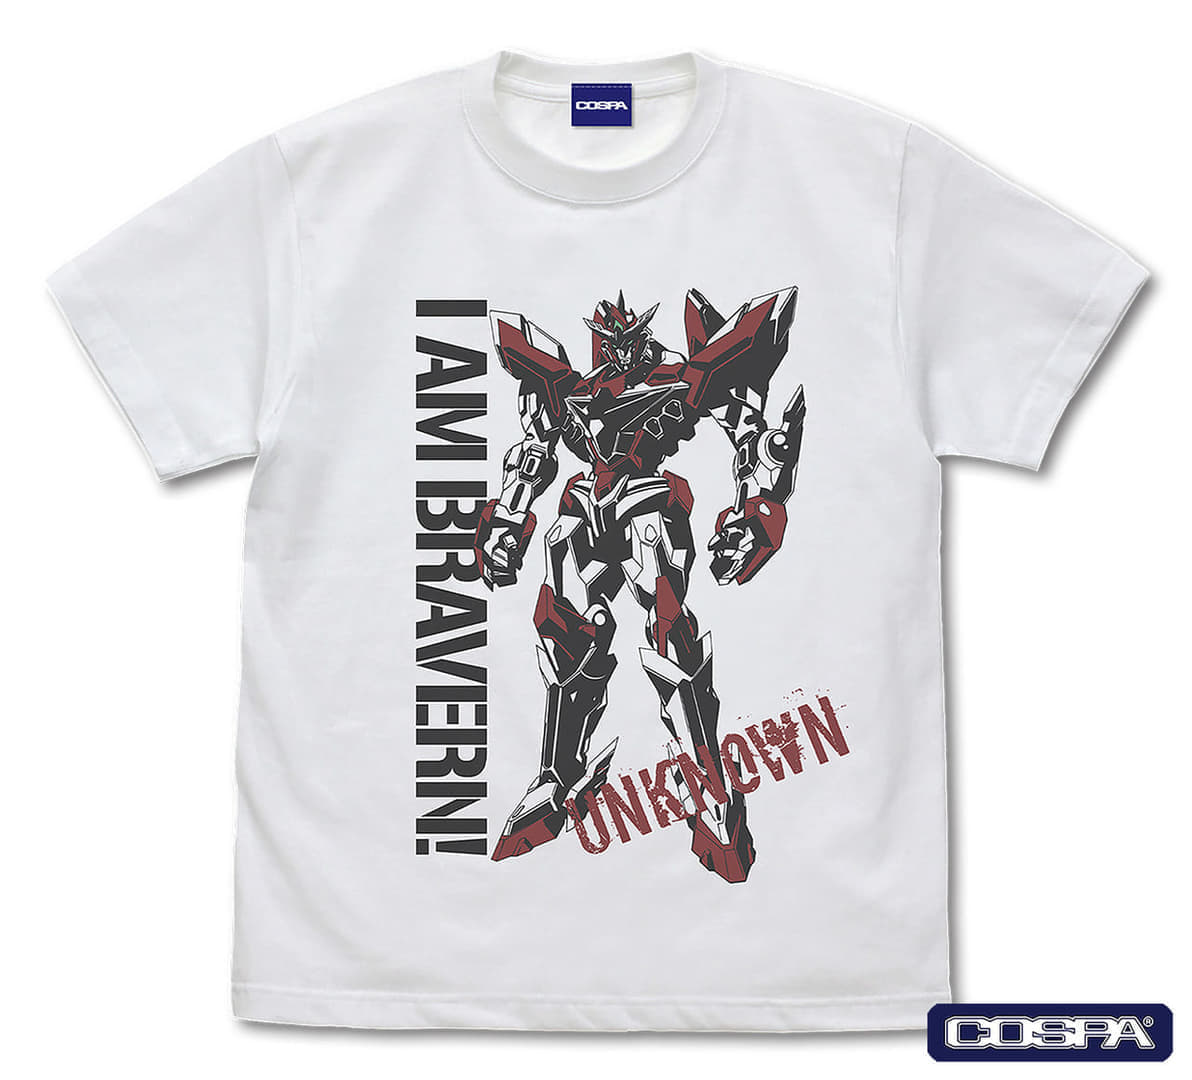 『勇気爆発バーンブレイバーン』の「イサミィーーッ！Tシャツ」が販売決定_001